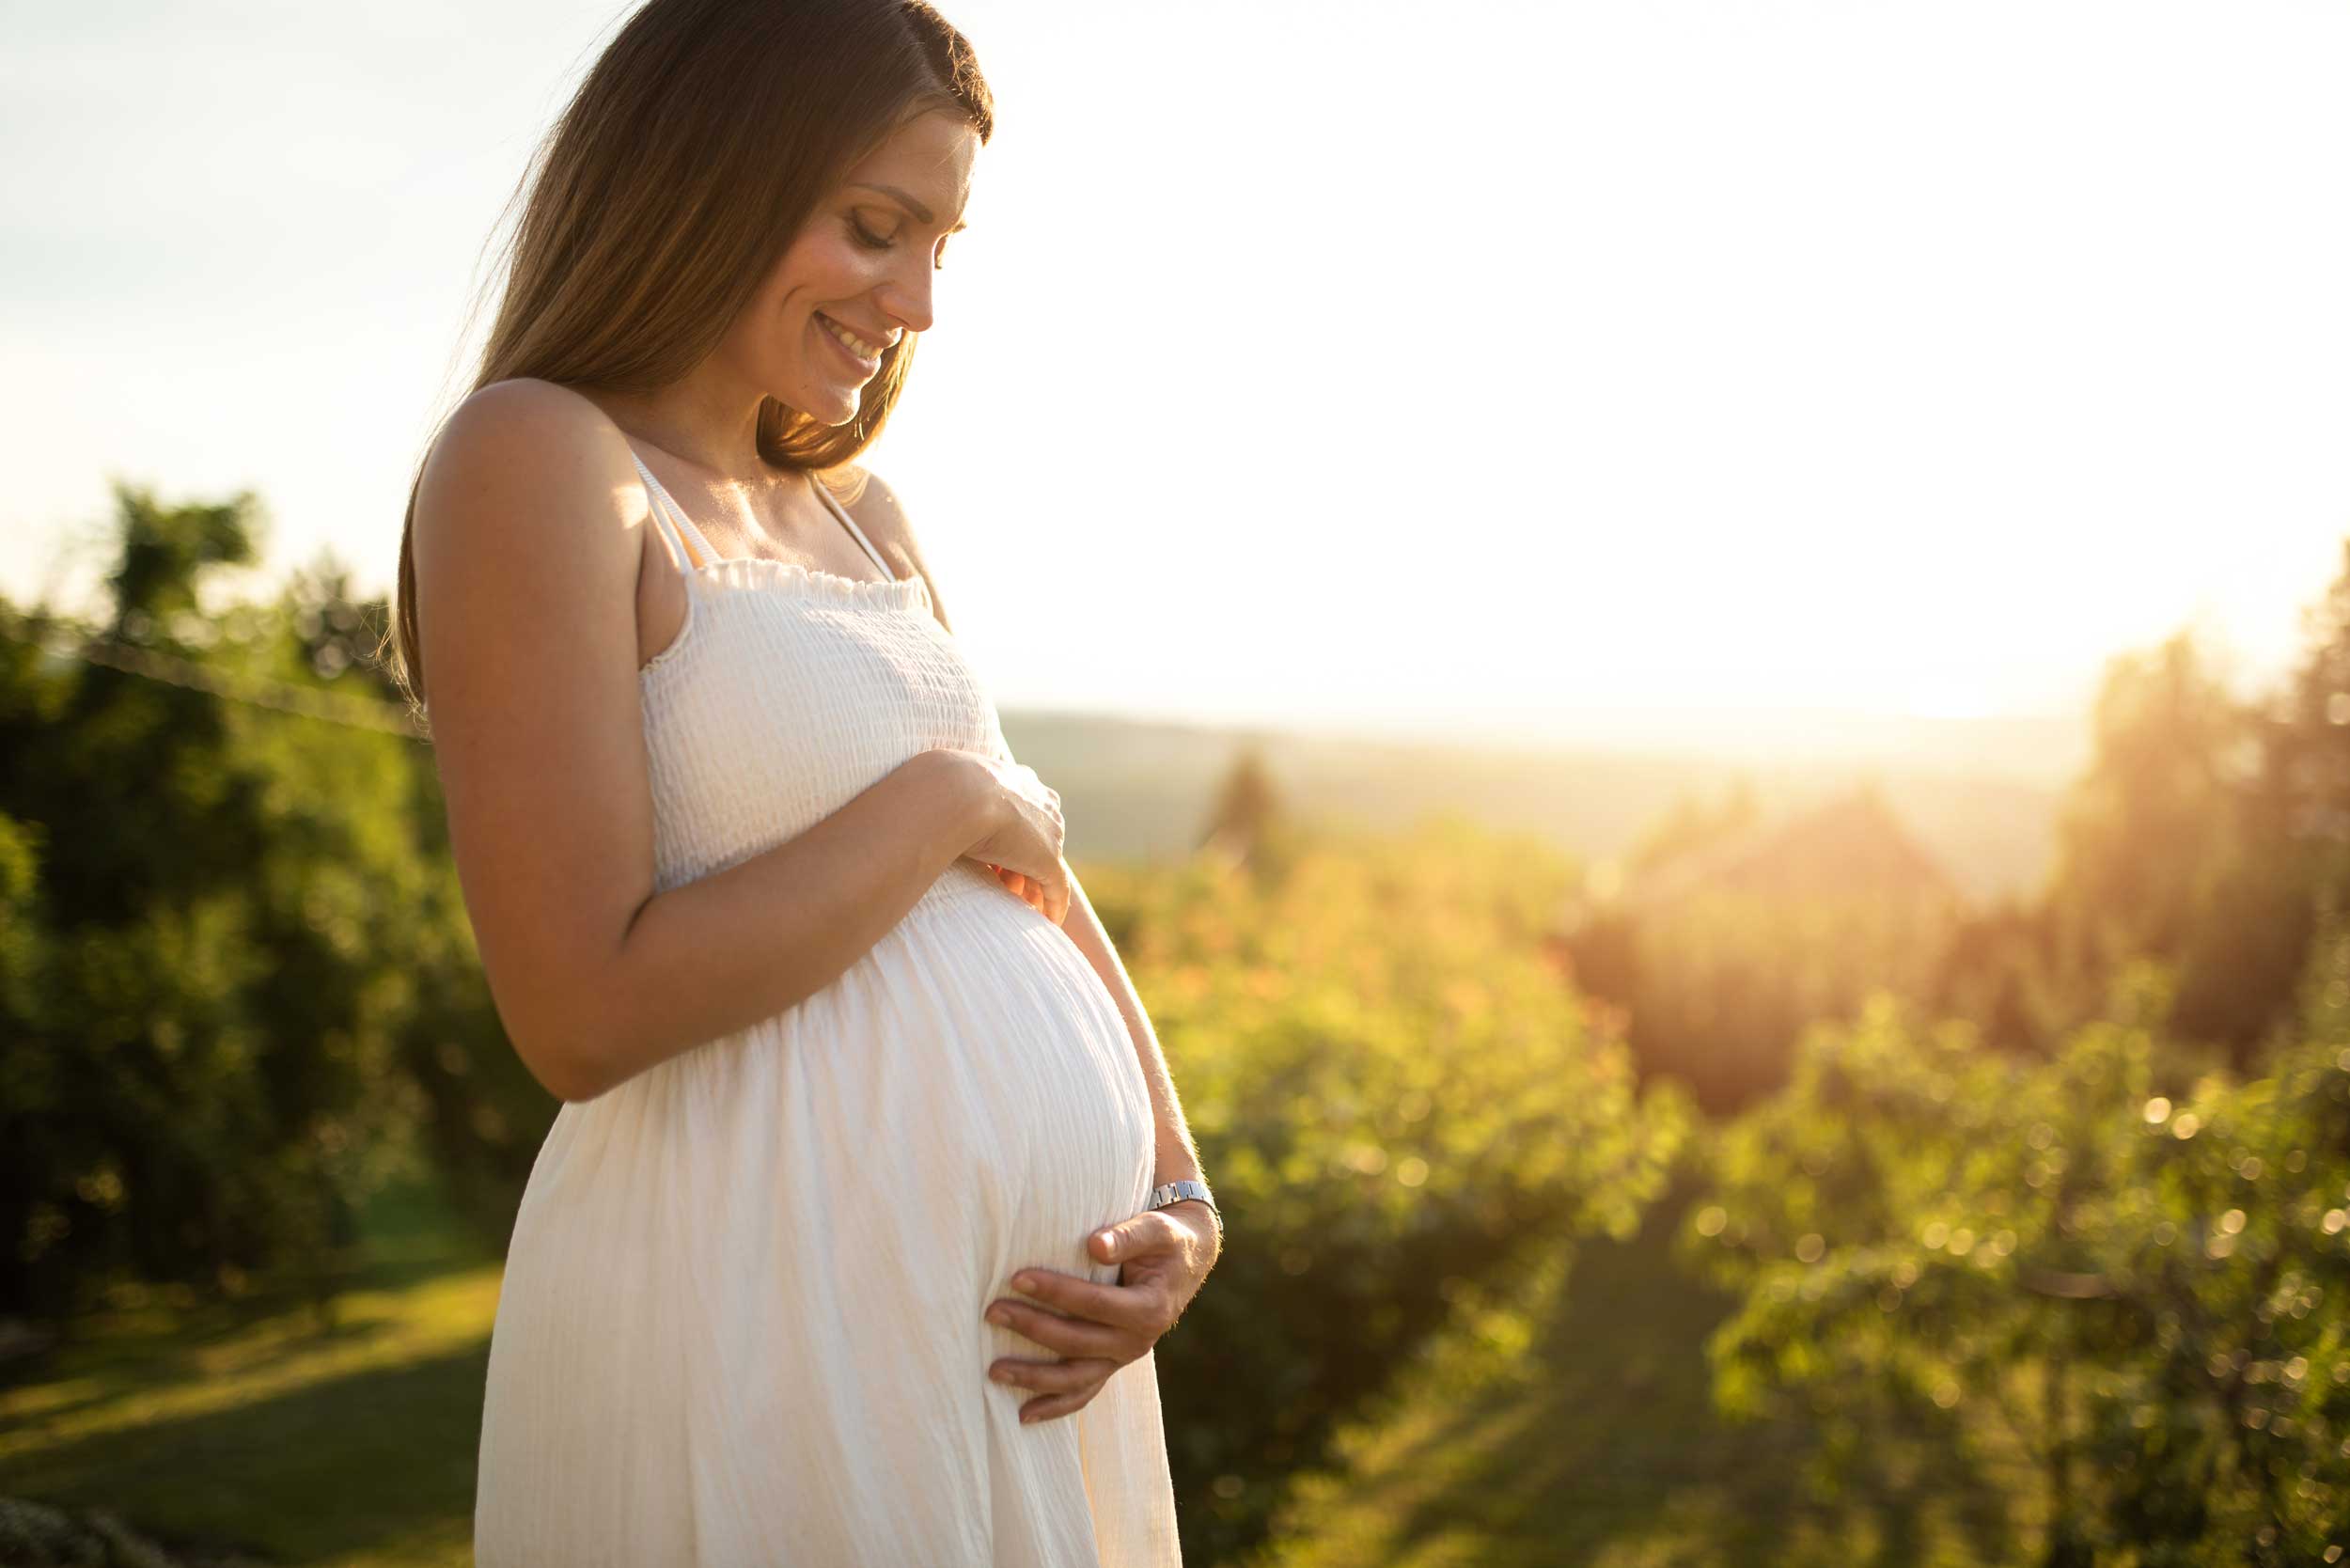 ברזל בהריון: כך תעשי זאת ותמנעי מחוסר ברזל בהריון